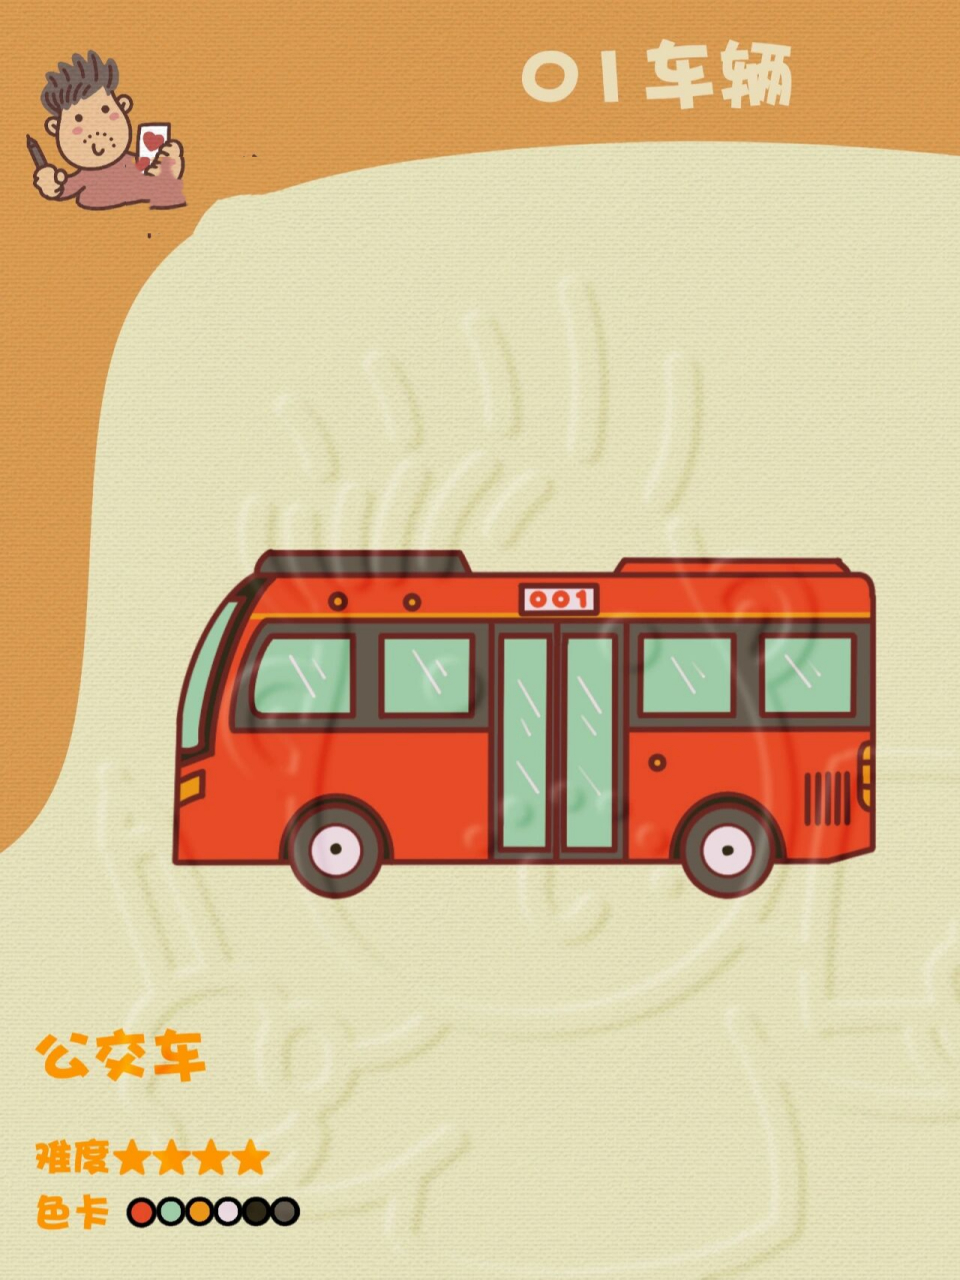 公交车 简笔画